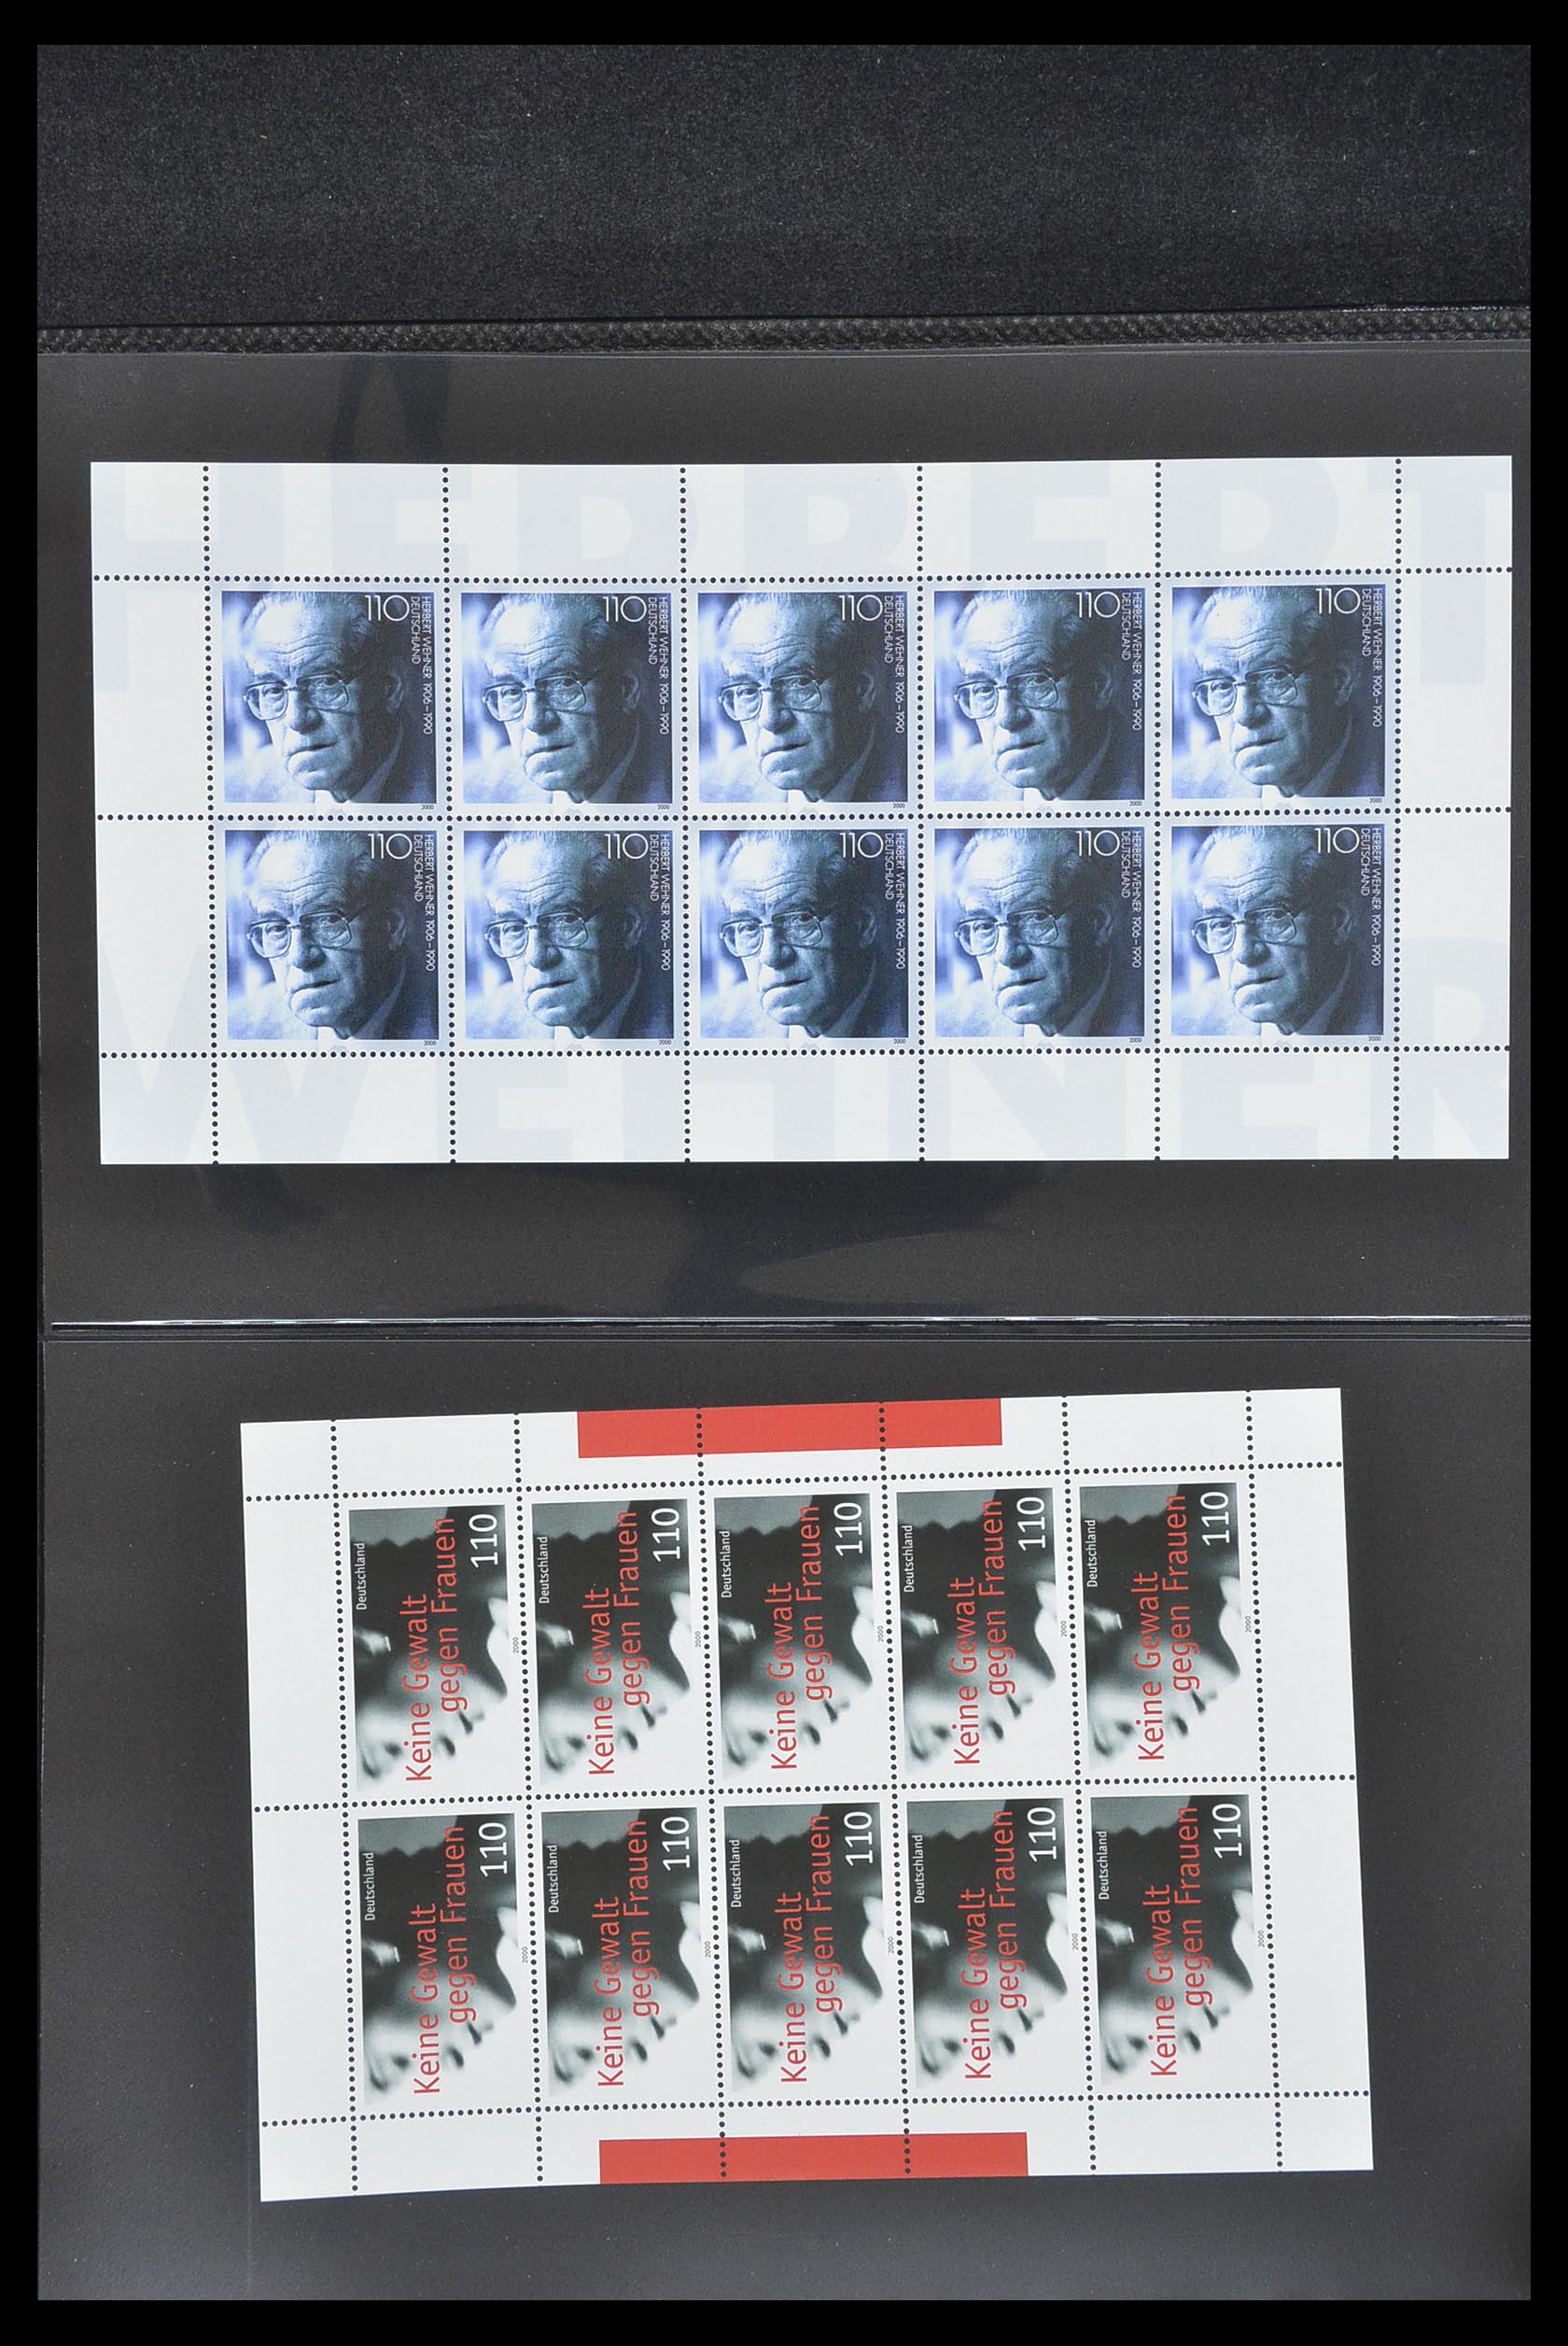 33936 148 - Stamp collection 33936 Bundespost kleinbogen 1994-2000.